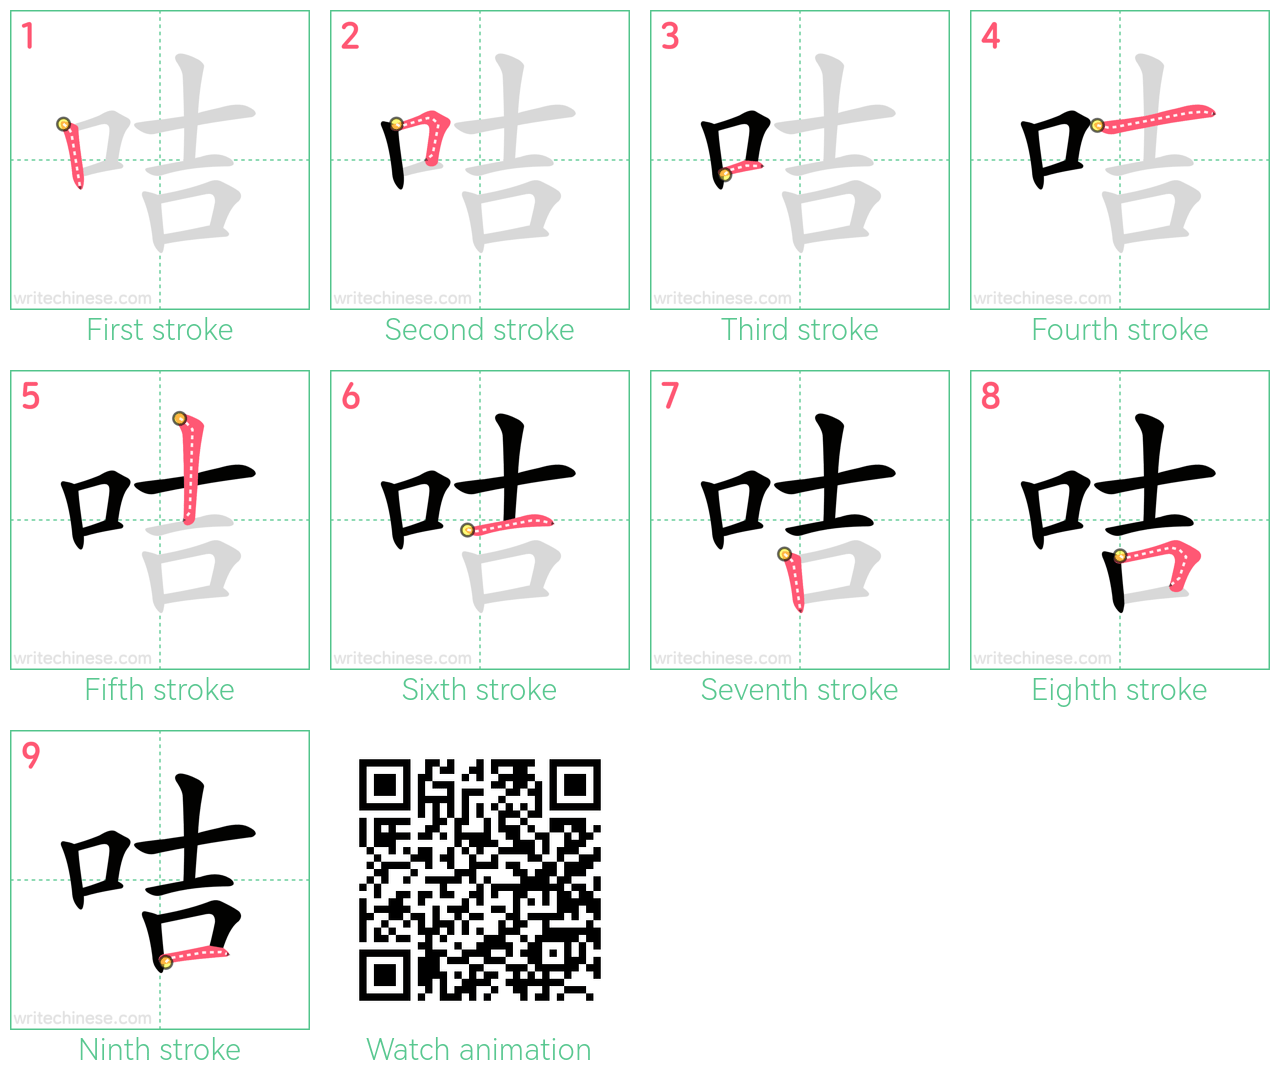 咭 step-by-step stroke order diagrams